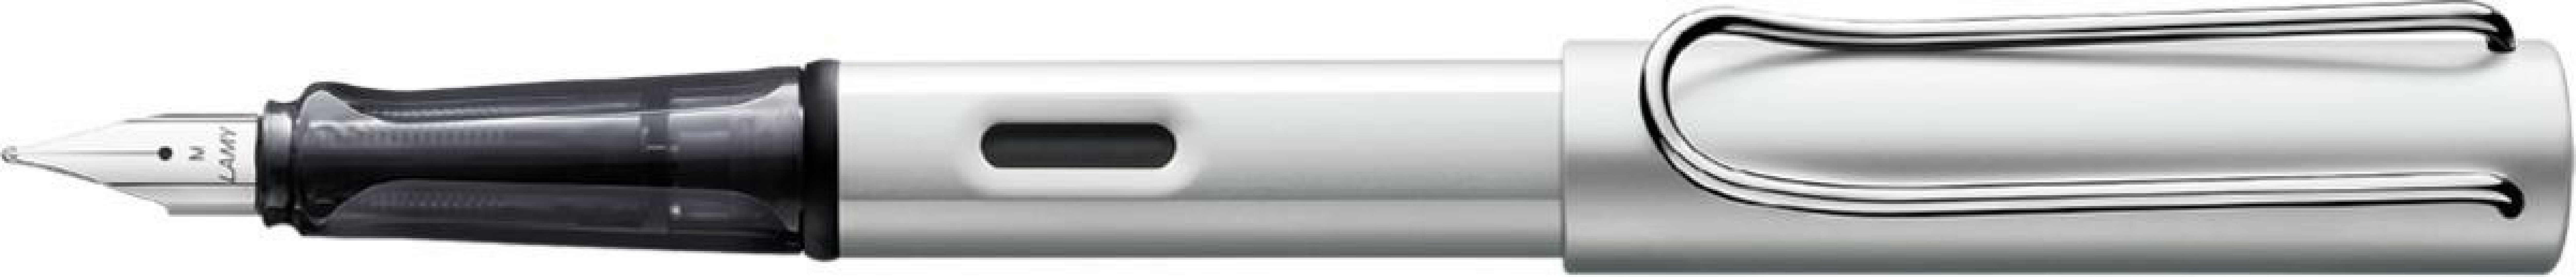 Lamy Al Star whitesilver special edition 2022 fountain pen